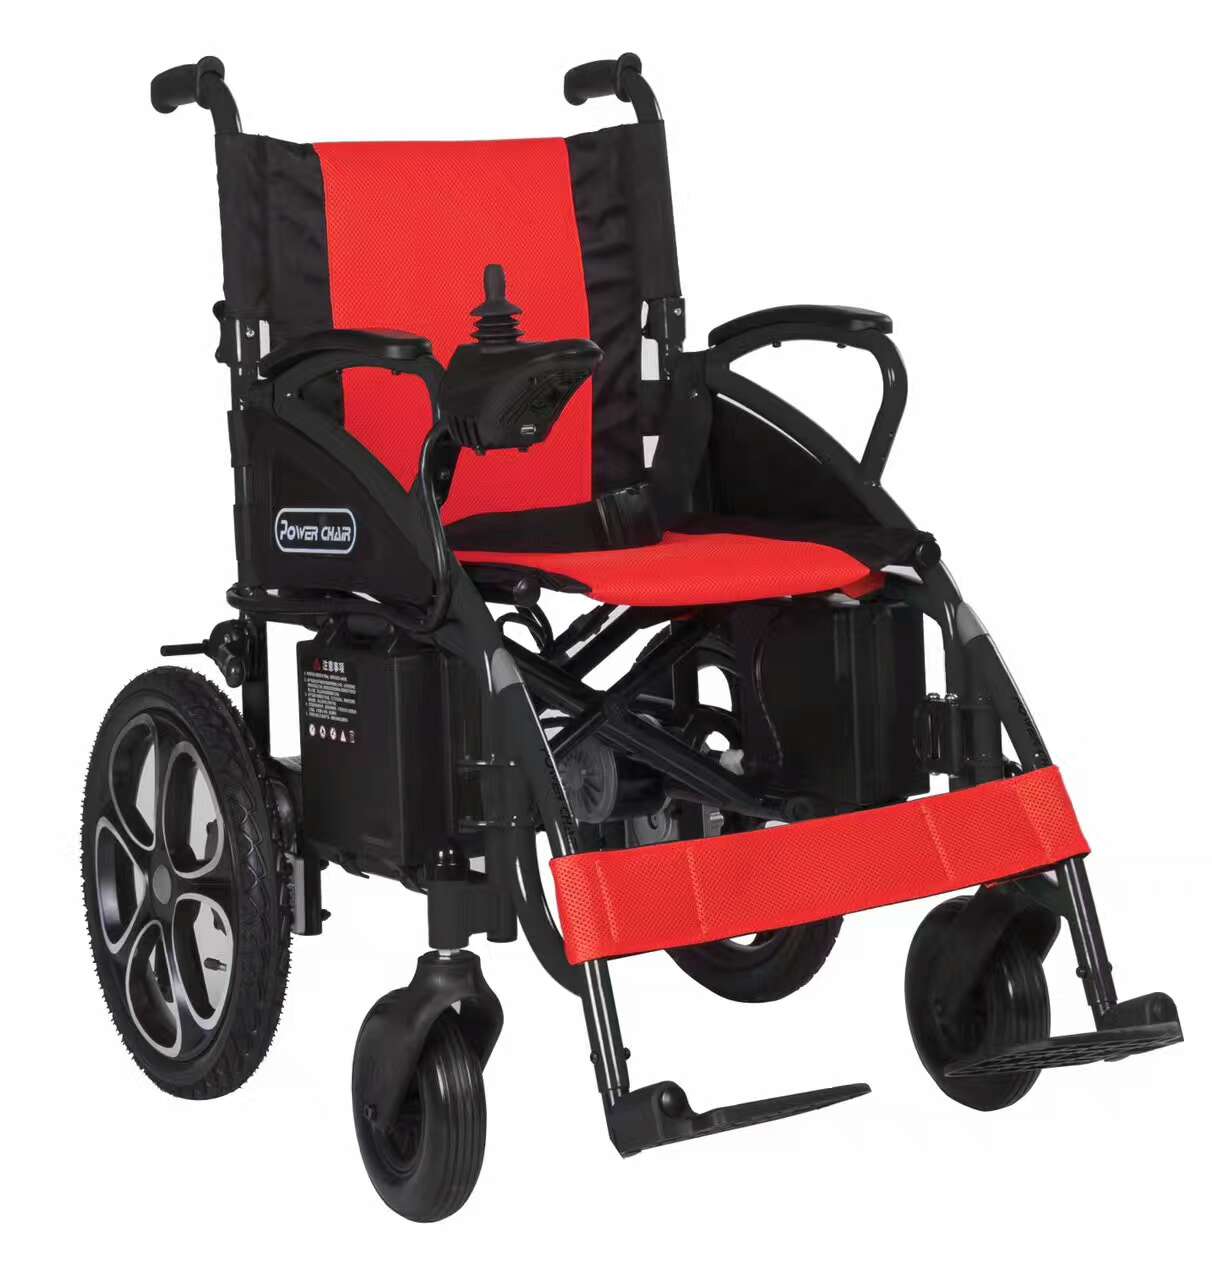 电动轮椅 W5213